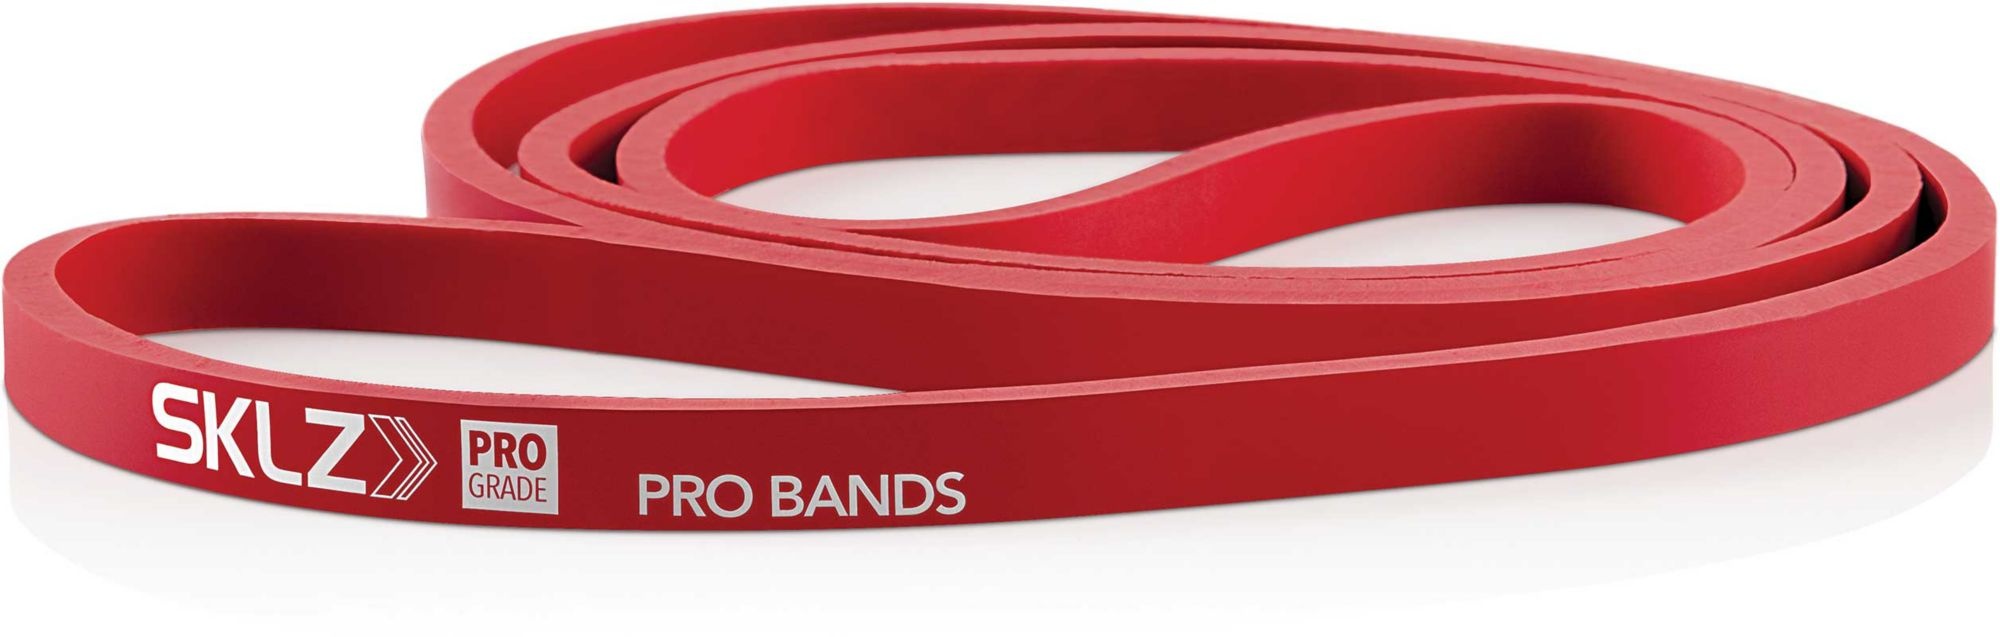 Sklz Pro Band Power Band Elastische Bänder Niveau 2 Mittel